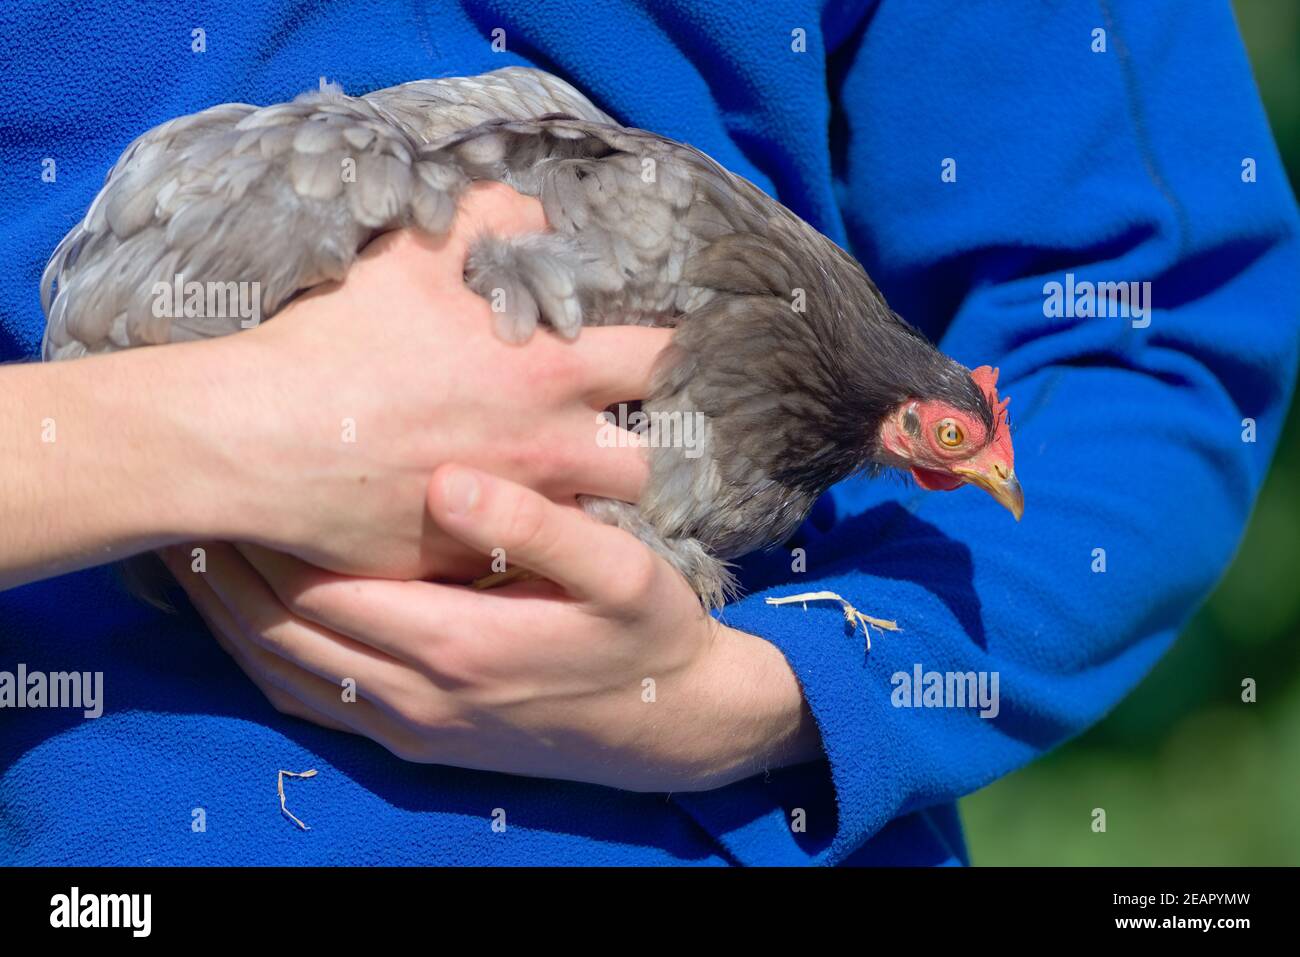 PET pekin bantam poulet de poule regarde vers le bas des bras de son soignant. Banque D'Images